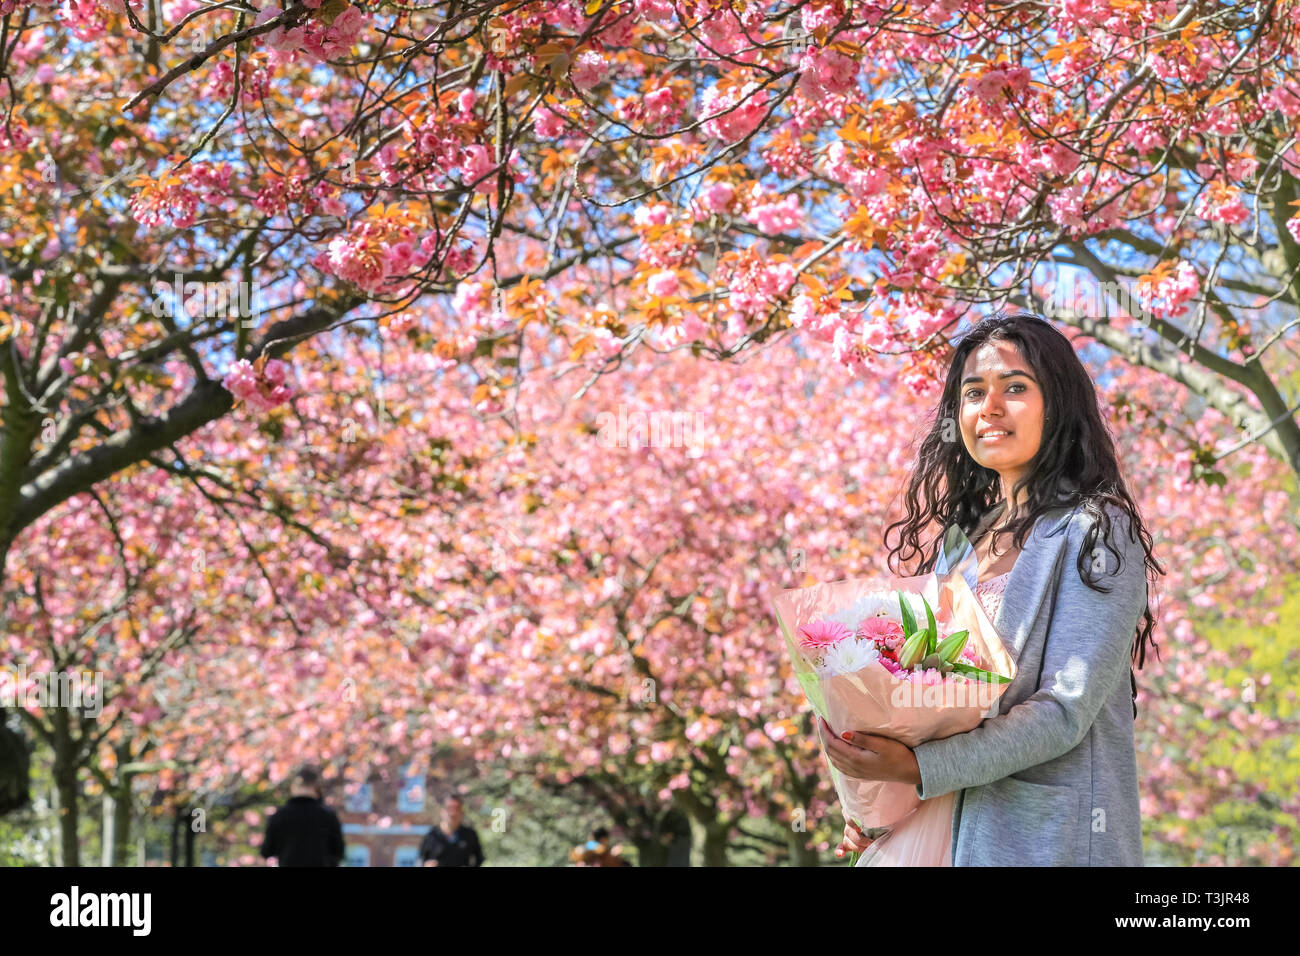 Greenwich, Londra, UK, 10 aprile 2019. Un paio di prendere i loro fiori di ciliegio foto completa con abito rosa e fiori, dopo aver viaggiato per la seconda volta come pioggia significava la loro foto non era bello come ieri. Persone da ammirare e prendere scatta di rosa fiori di ciliegio che ora è in piena fioritura. I visitatori viaggiano spesso soprattutto per vedere il ben noto 'Cherry Blossom Alley' nel parco di Greenwich, Londra. Credito: Imageplotter/Alamy Live News Foto Stock